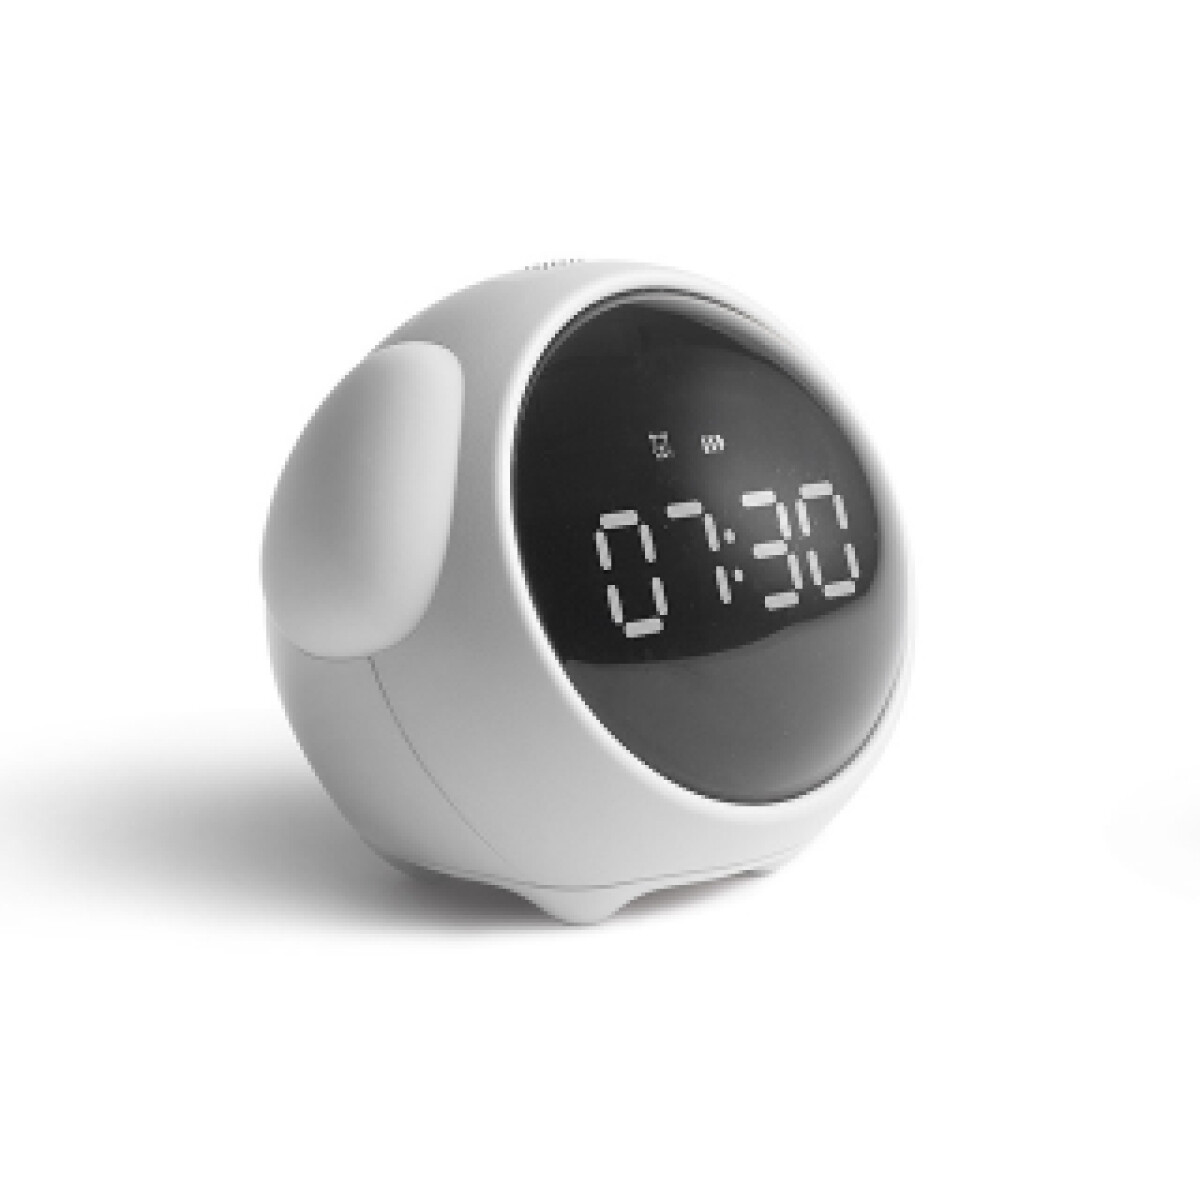 Reloj despertador digital Azul Índigo – Fisura